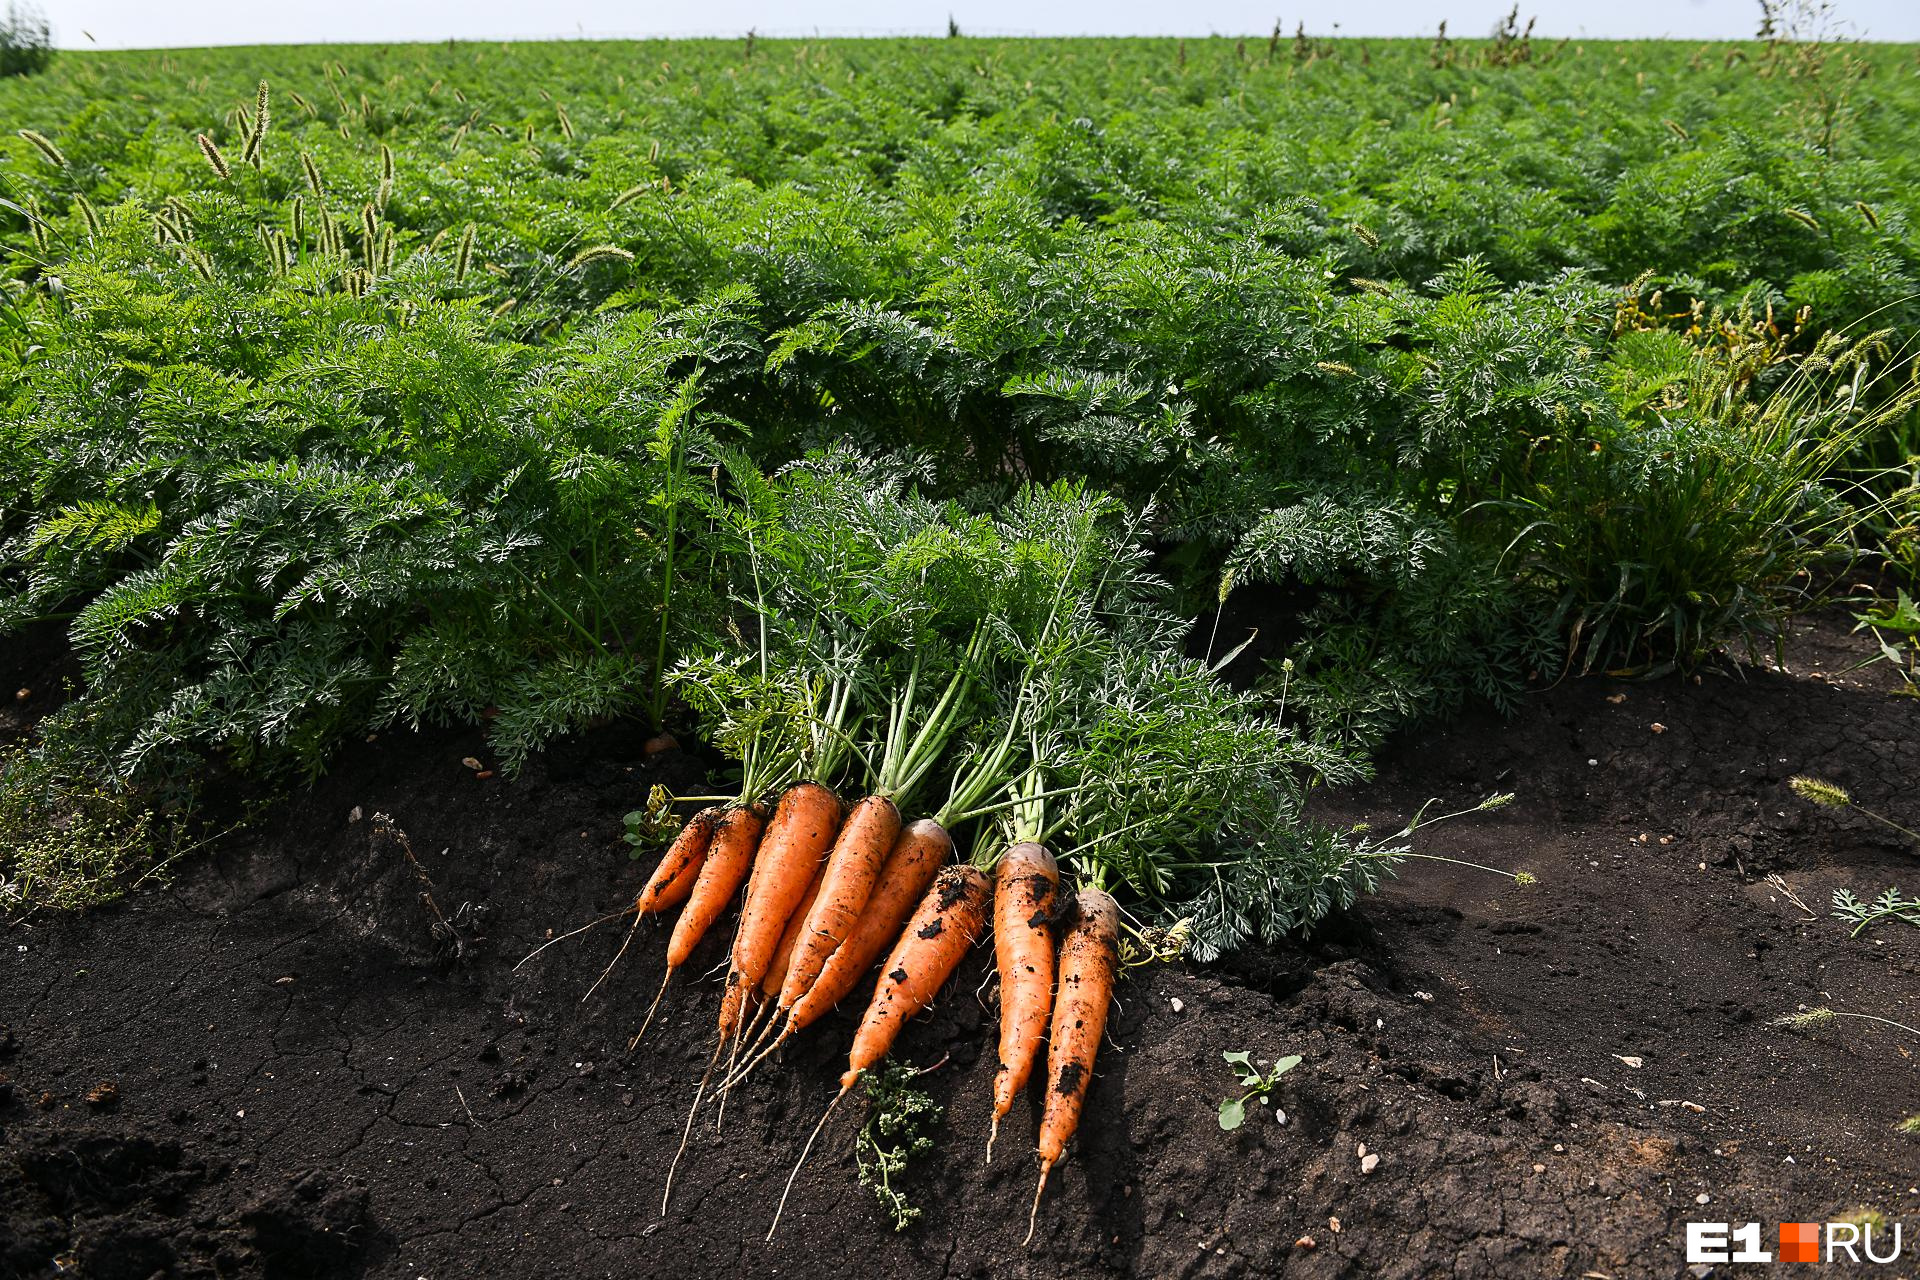 Почему морковь растет кривая и рогатая: узнайте причины и избегайте ошибок